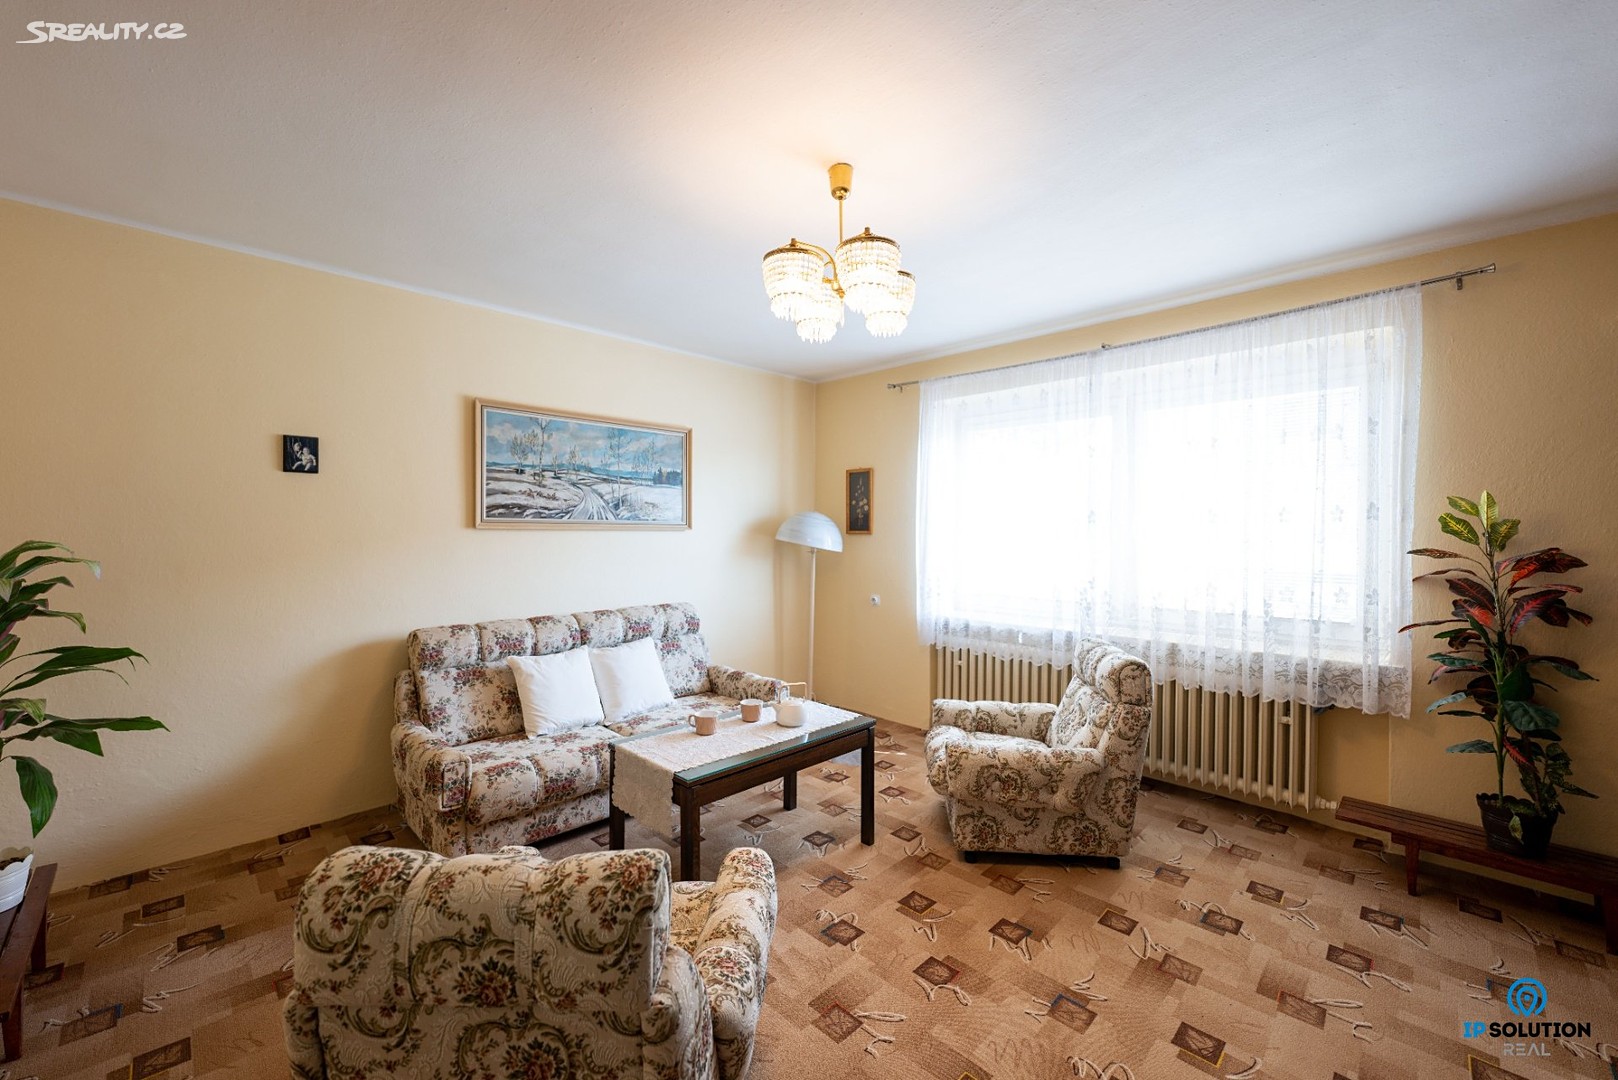 Prodej  rodinného domu 290 m², pozemek 817 m², Lednická, Břeclav - Charvátská Nová Ves